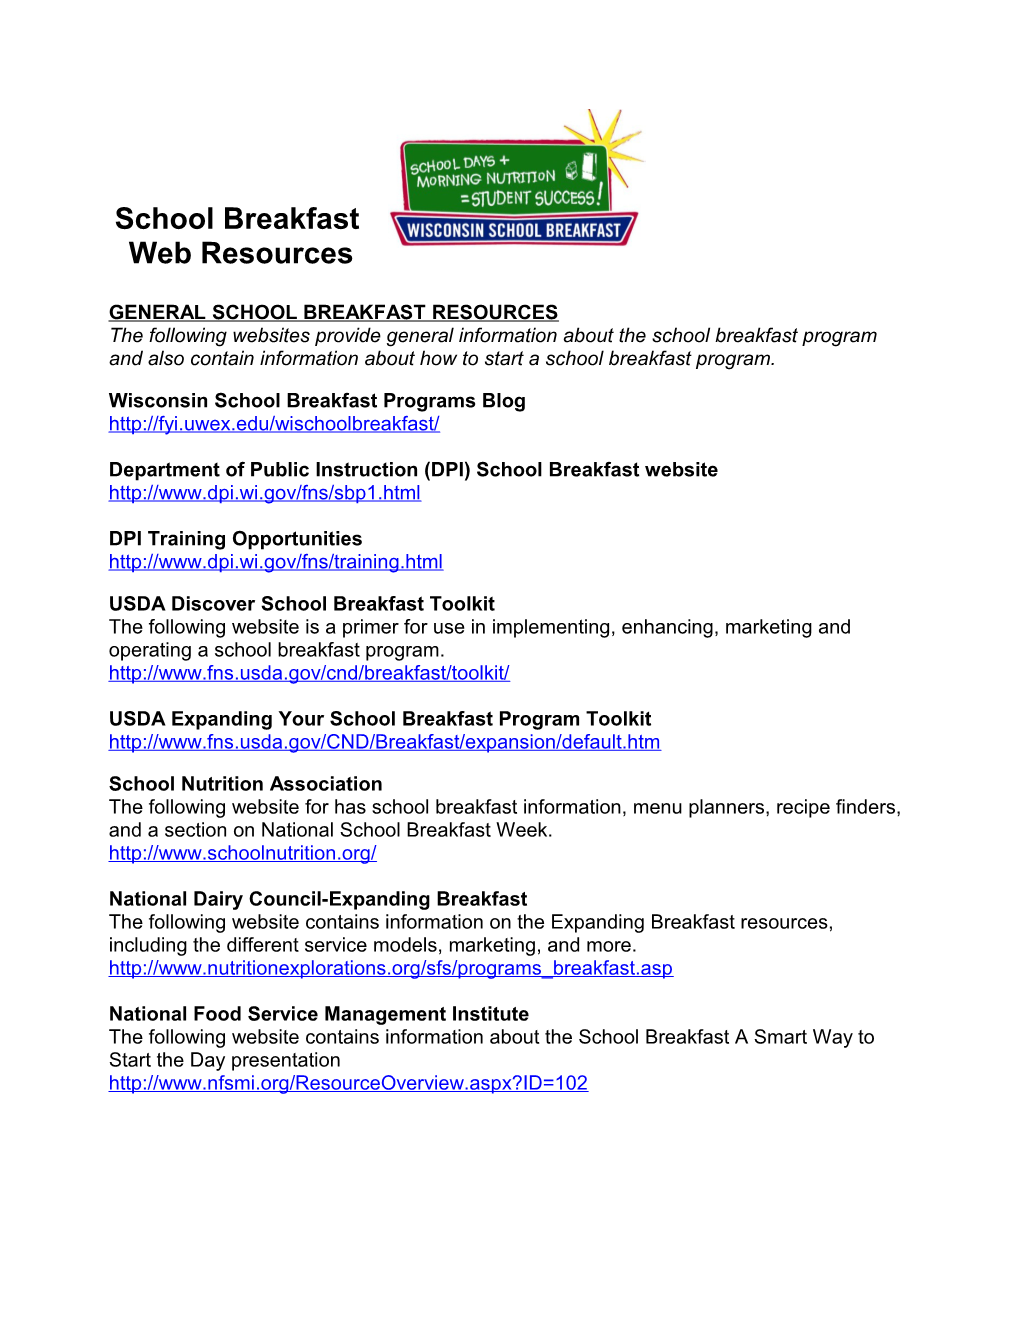 School Breakfast Websites